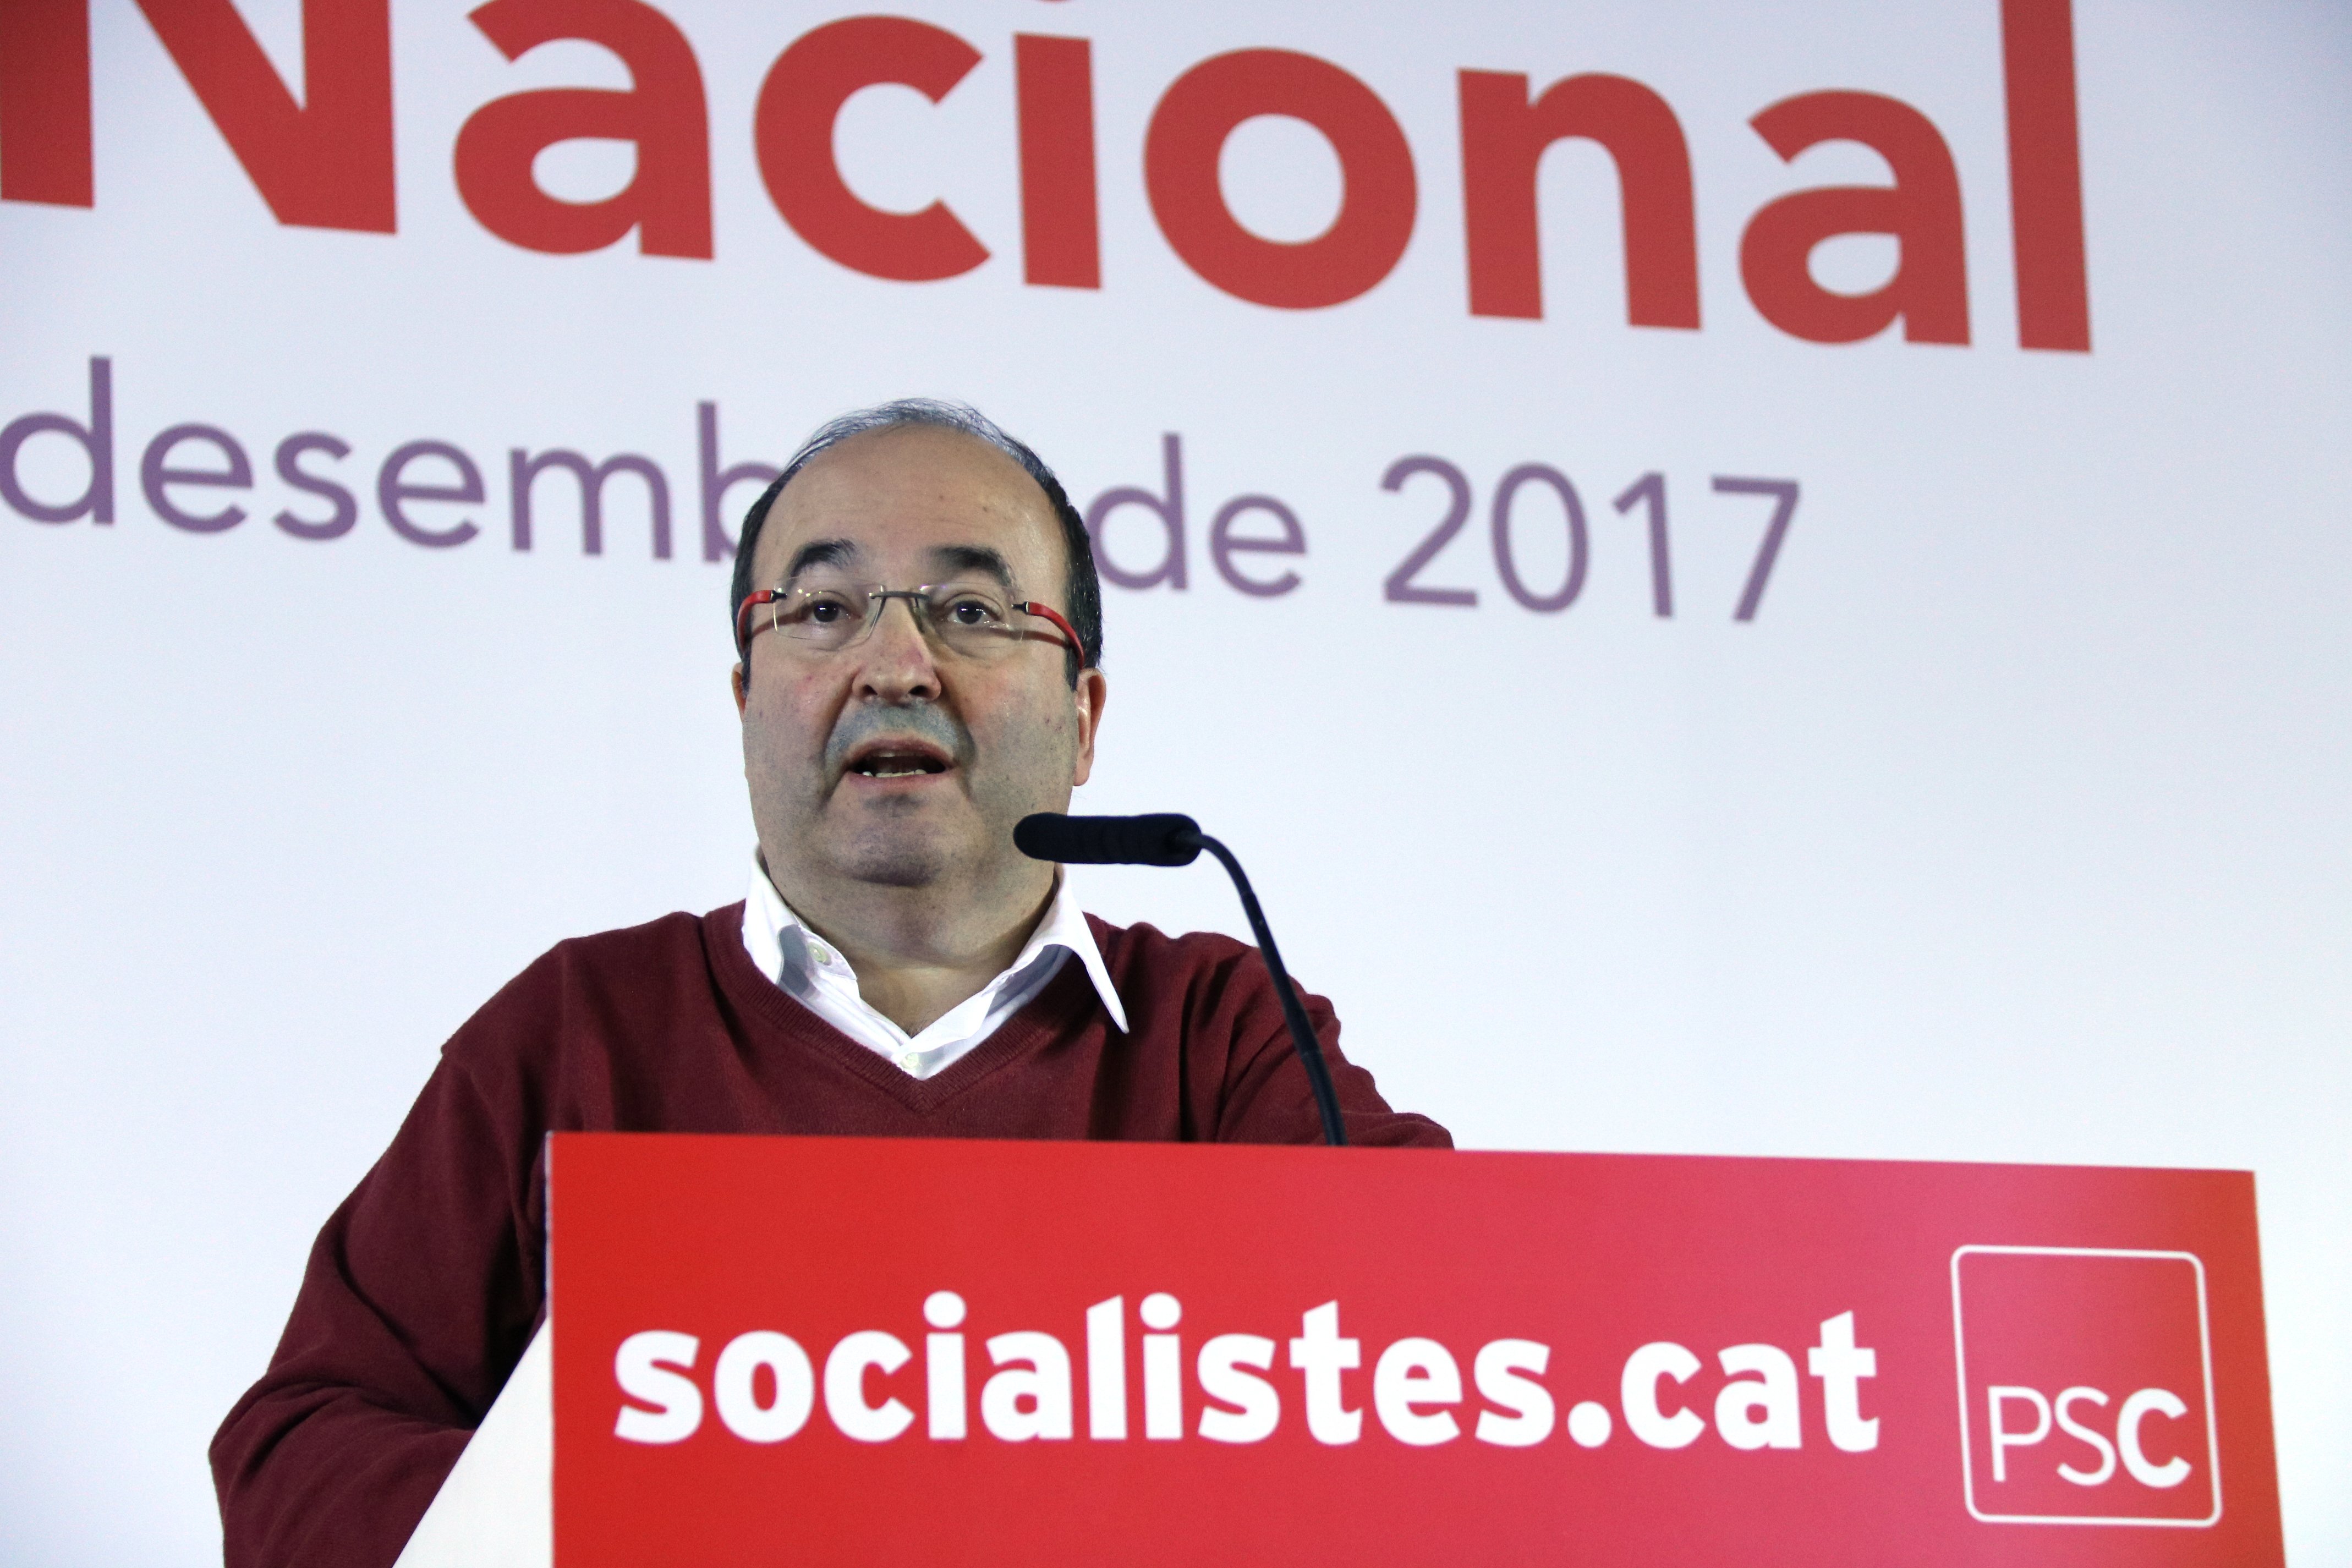 Iceta avisa que no renunciará al federalismo "por un puñado de votos"